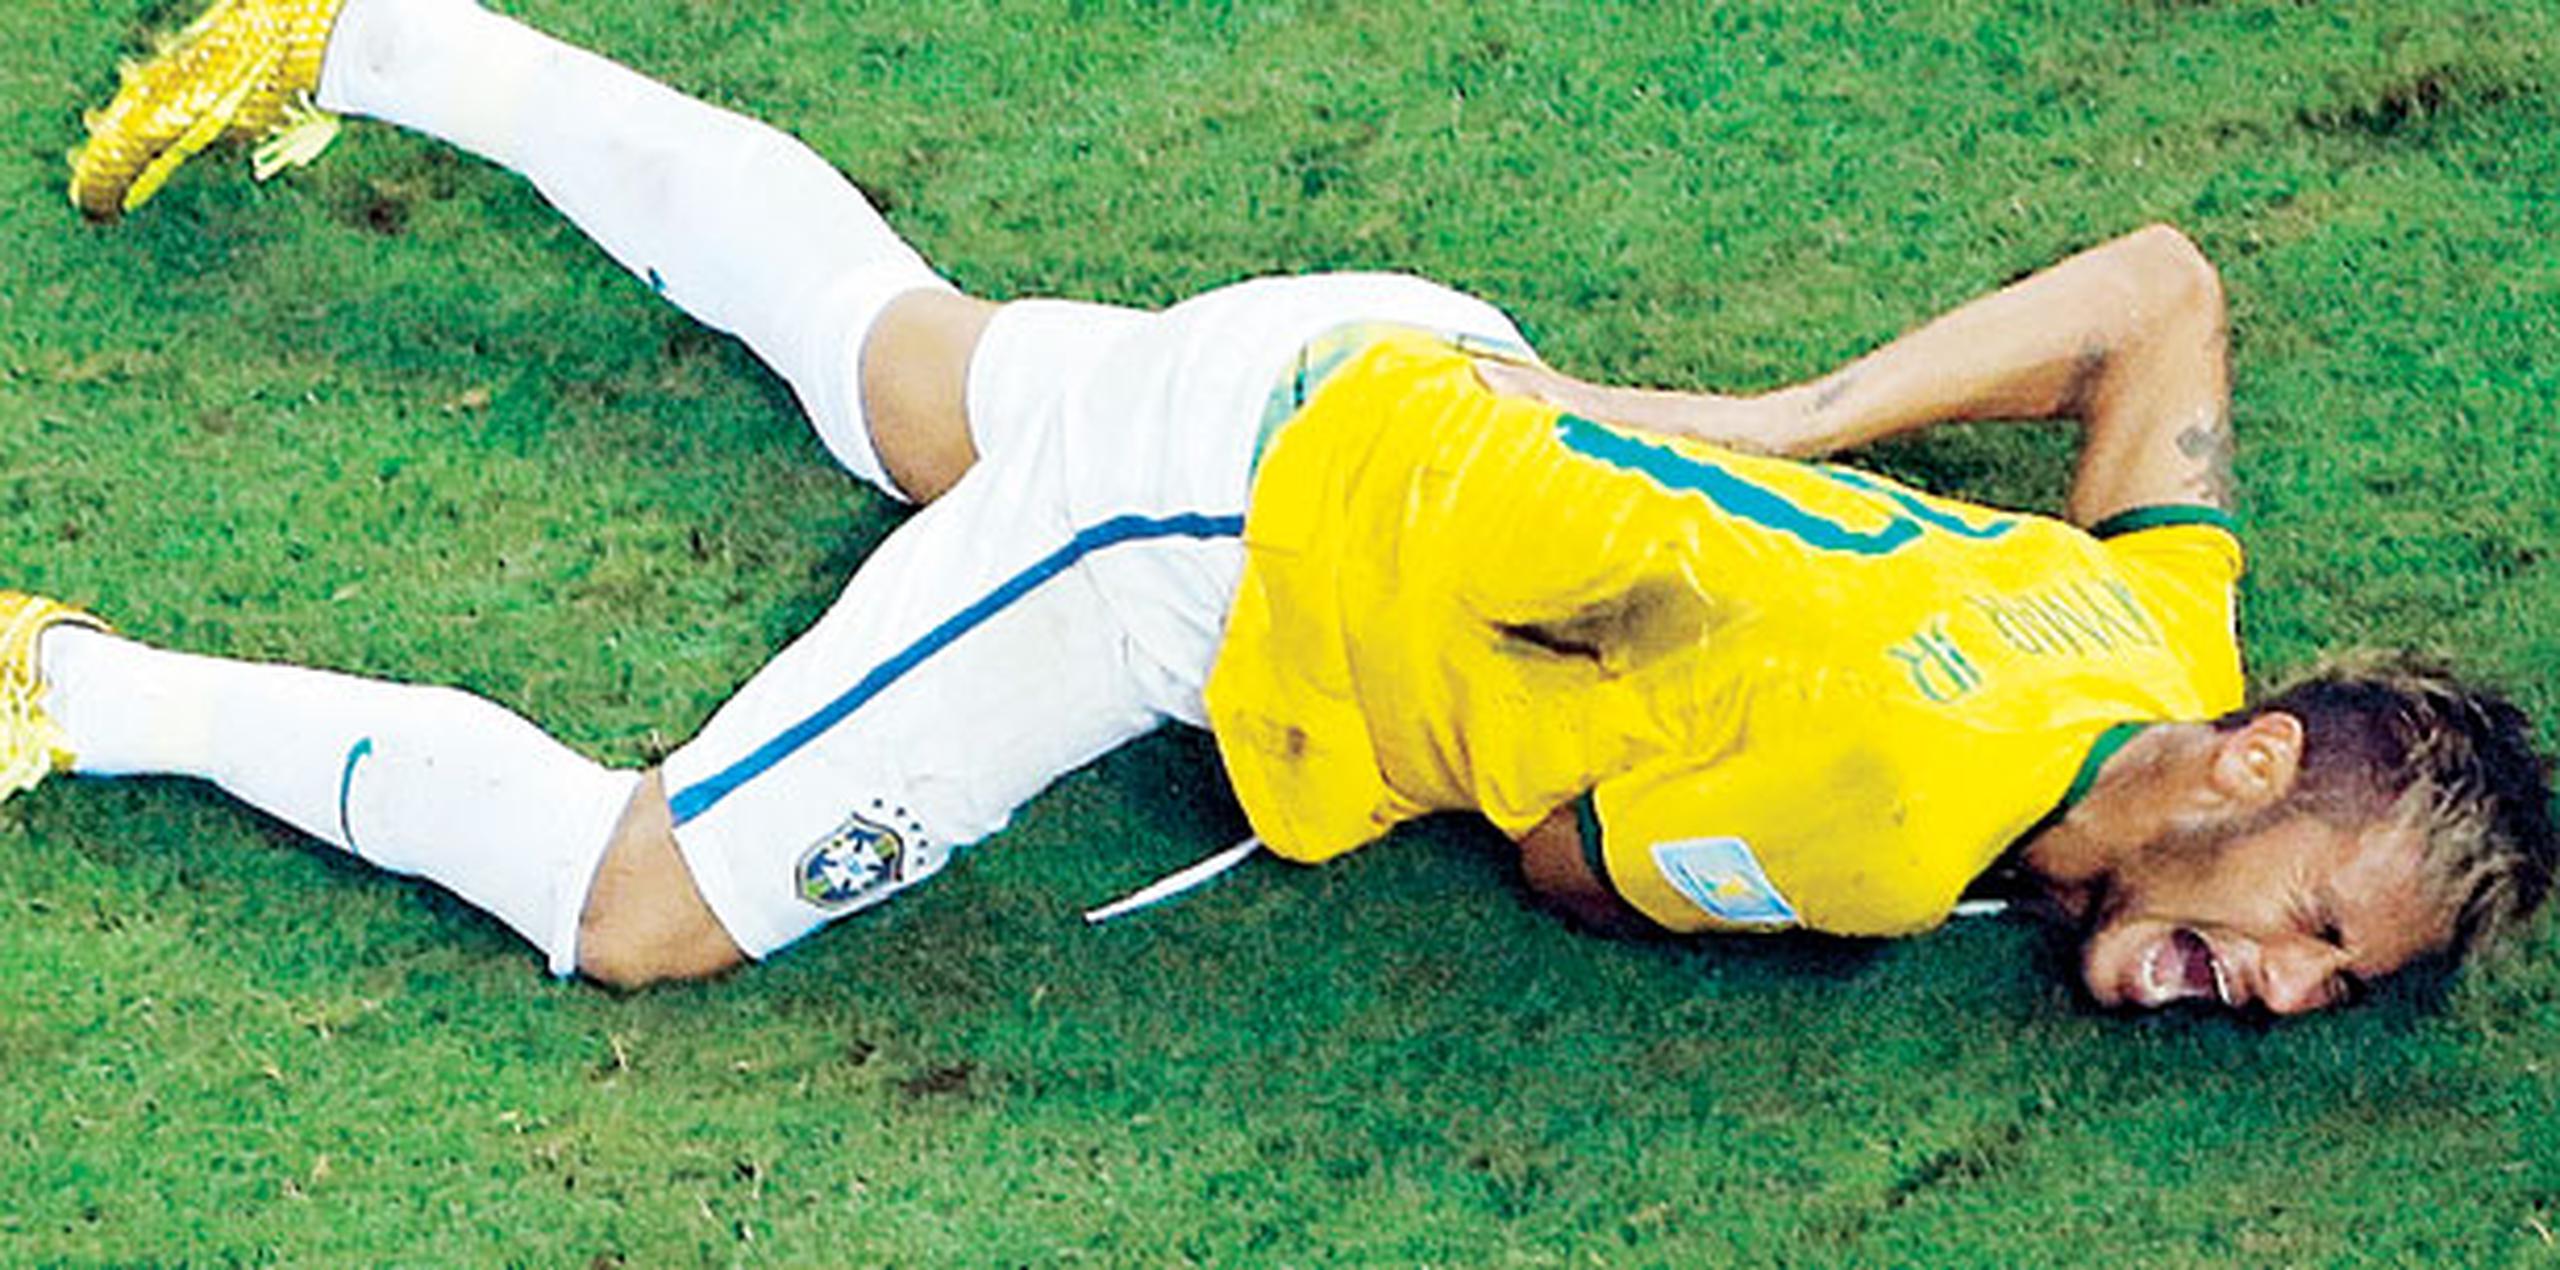 Neymar actualmente se recupera de otra lesión de metatarso en su pie derecho sufrida en enero, y se espera que regrese a las canchar el próximo mes. (Archivo)